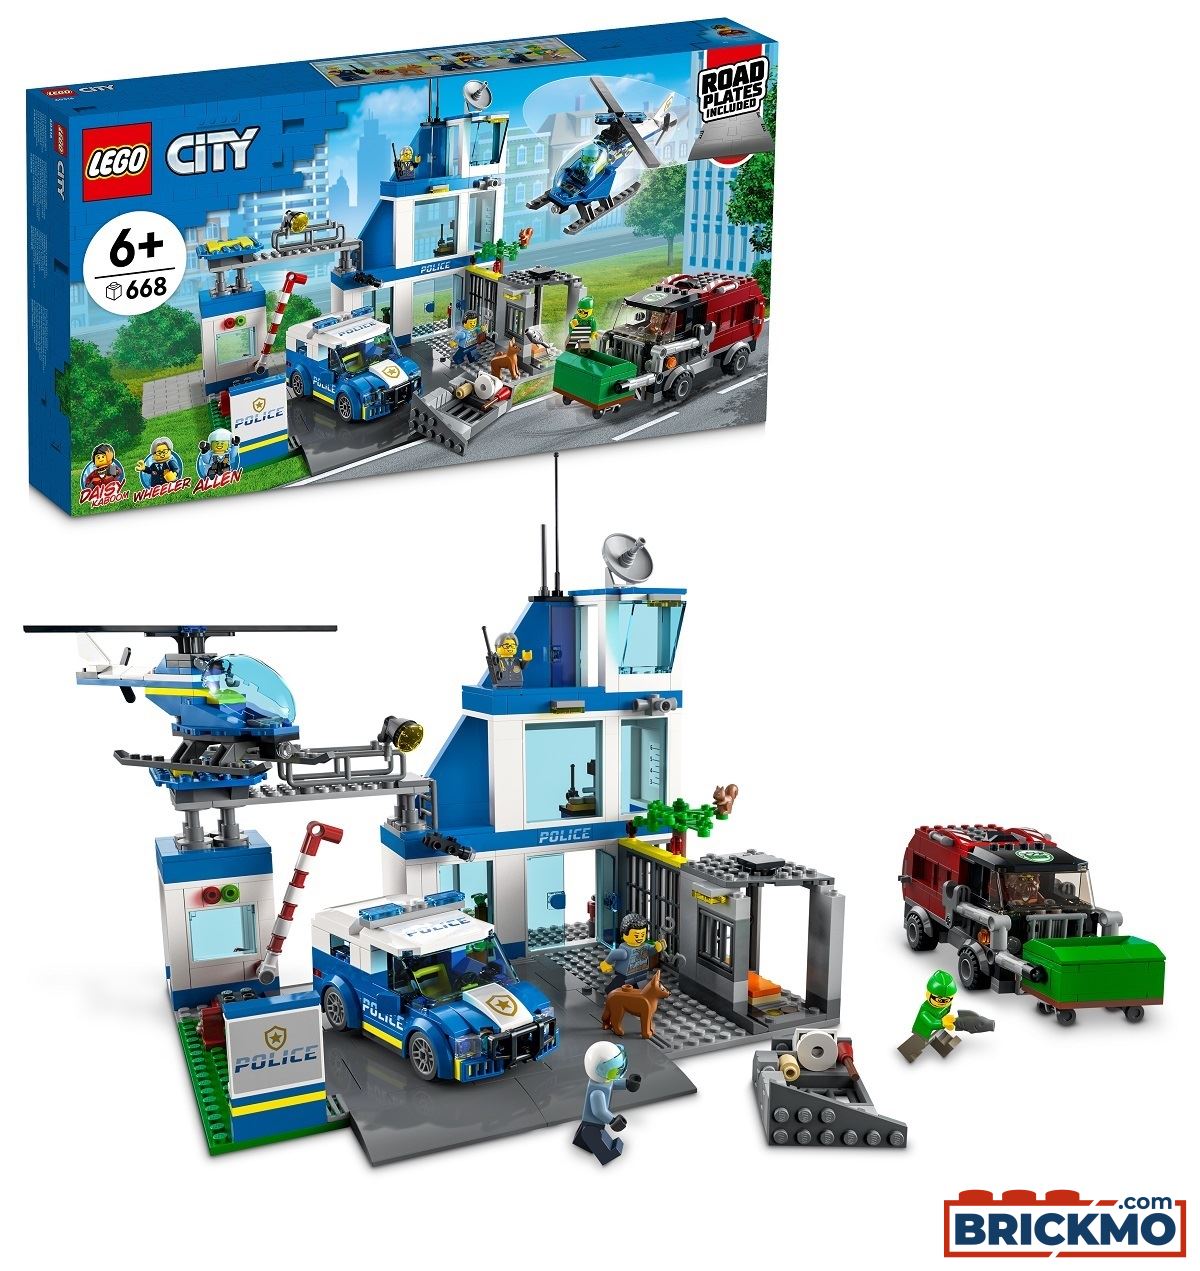 LEGO City Polizeistation 60316 TRUCKMO.com